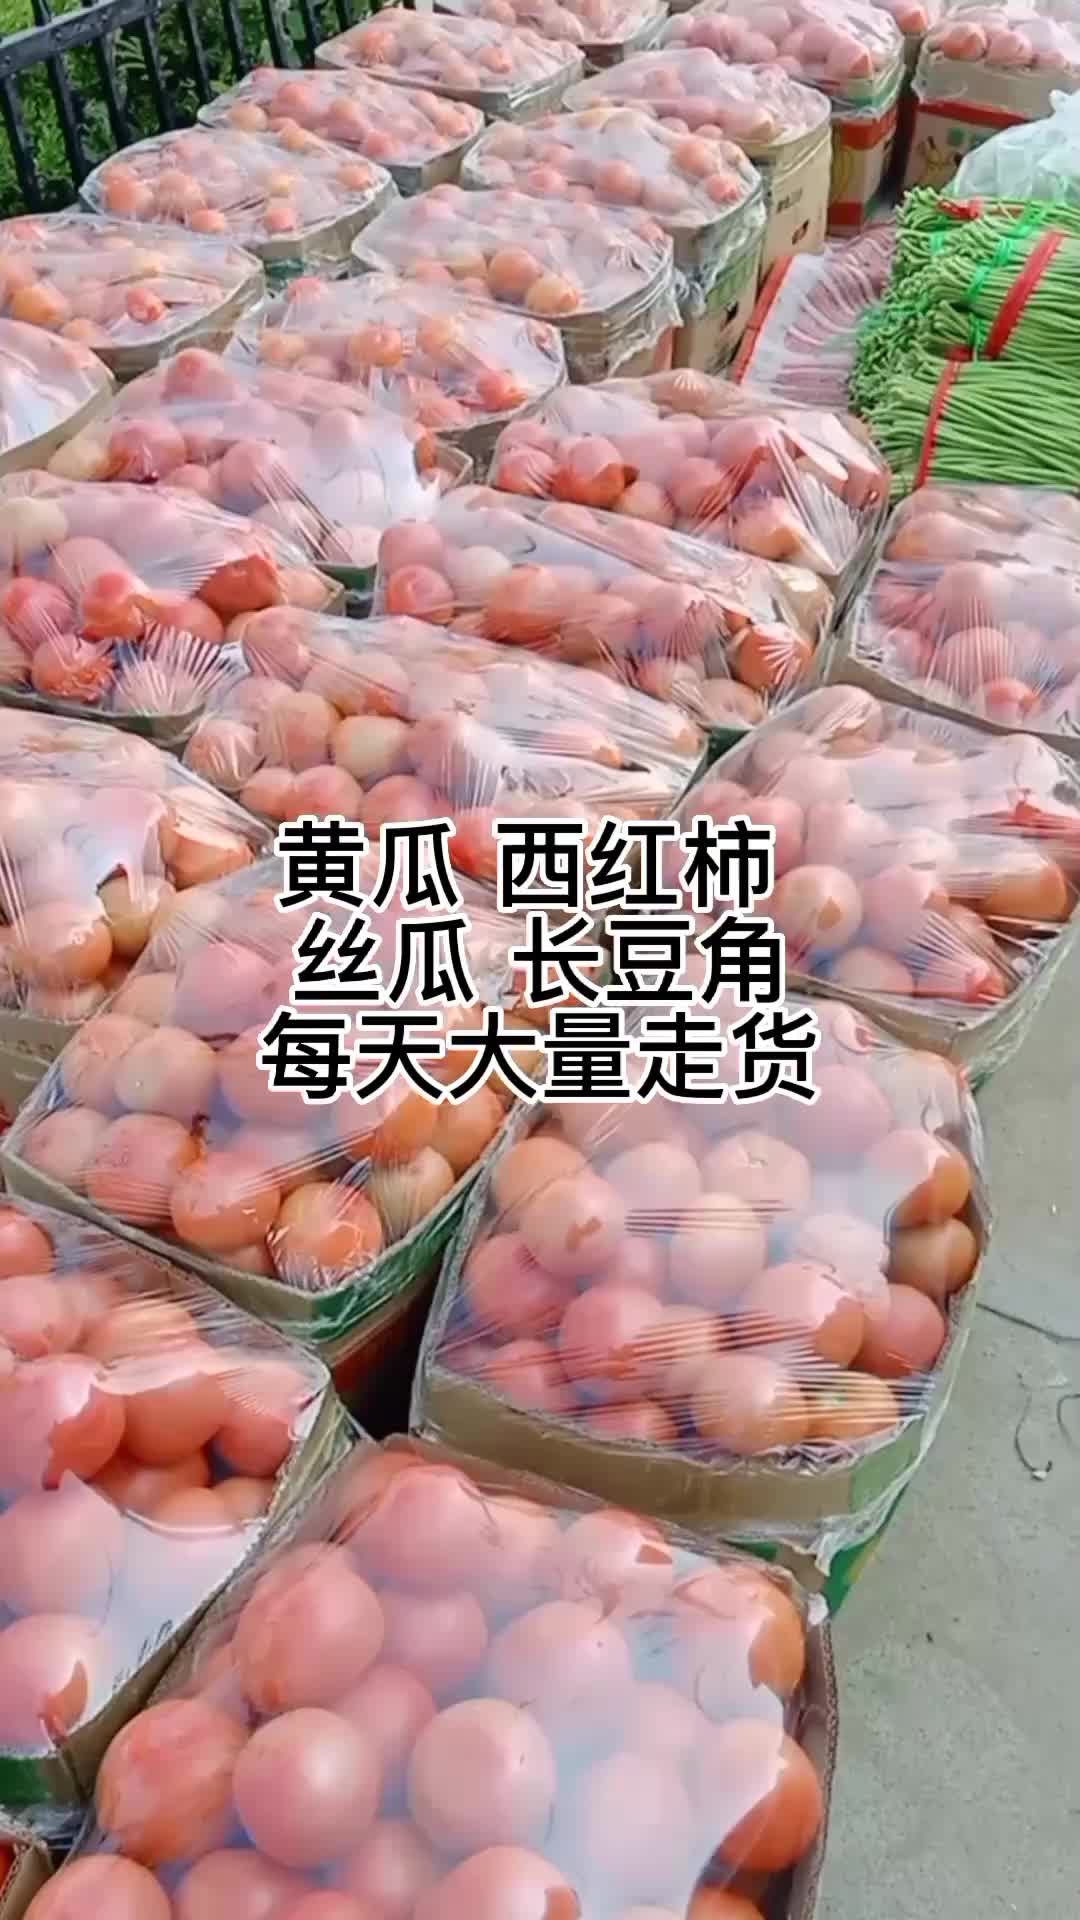 江苏徐州 黄瓜 西红柿 长豆角 丝瓜